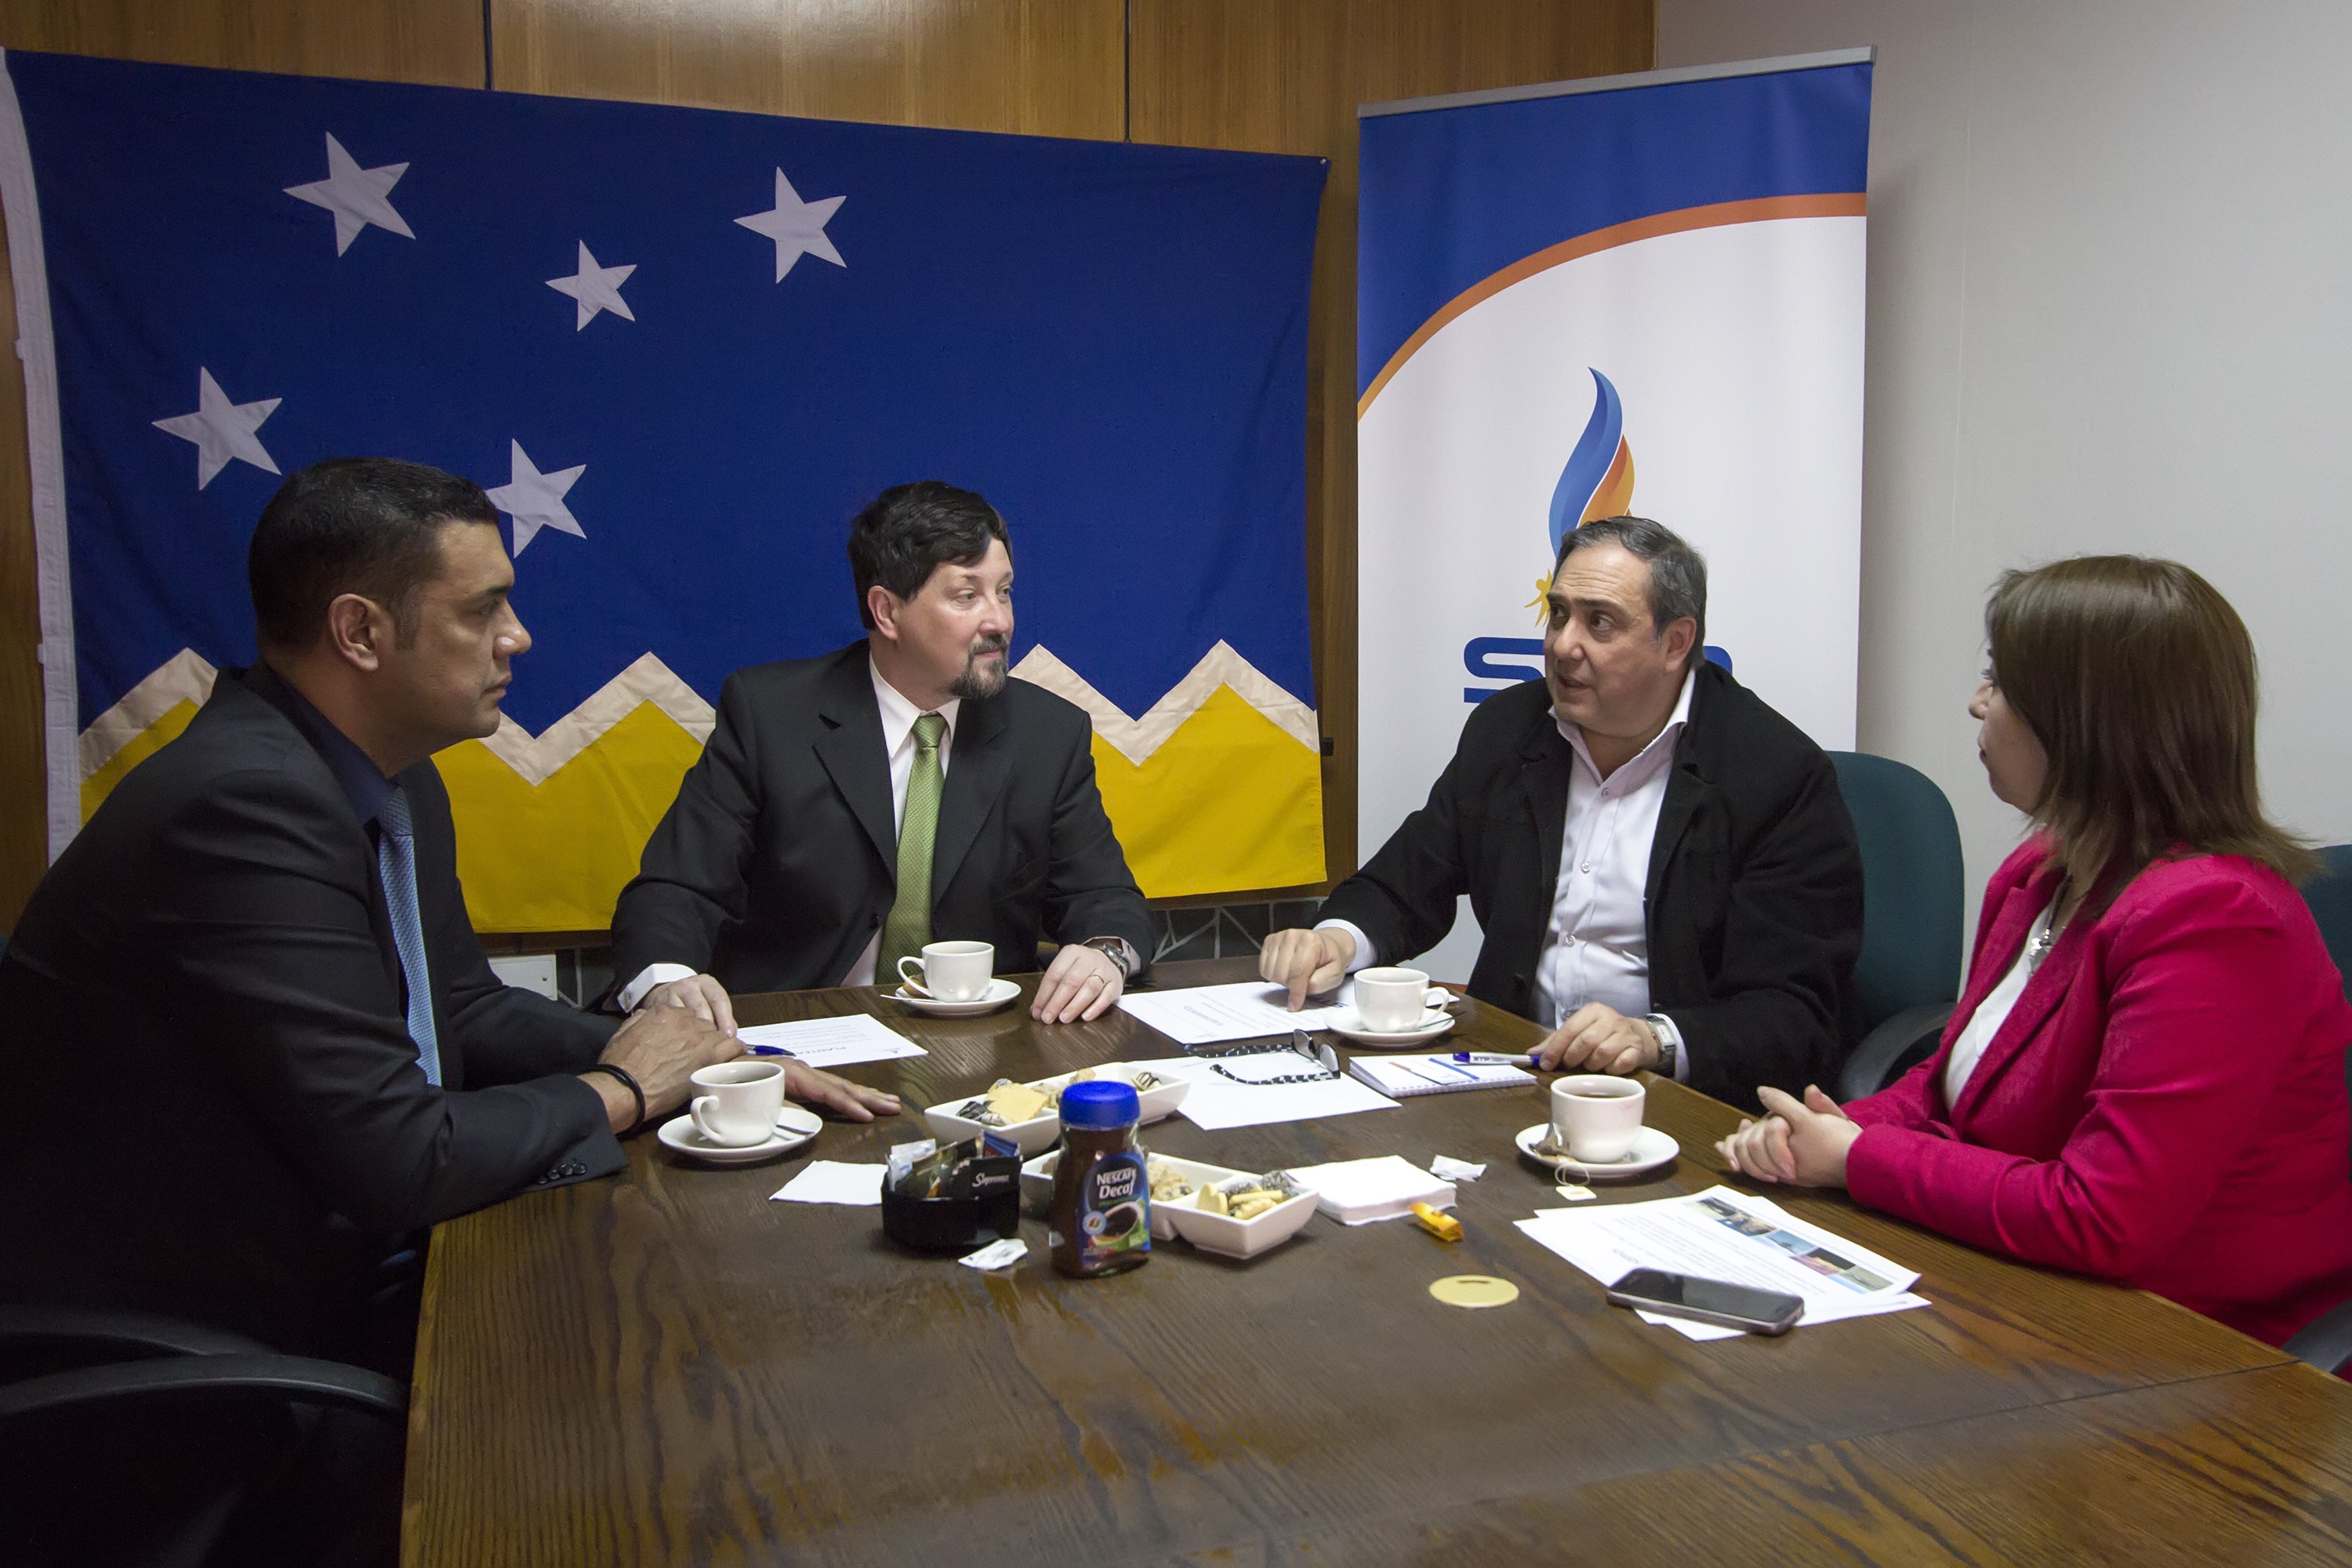 Sindicato de Profesionales expondrá ante la comisión de Energía del Senado:  Con argumentos técnicos esperan defender aporte compensatorio al gas en Magallanes